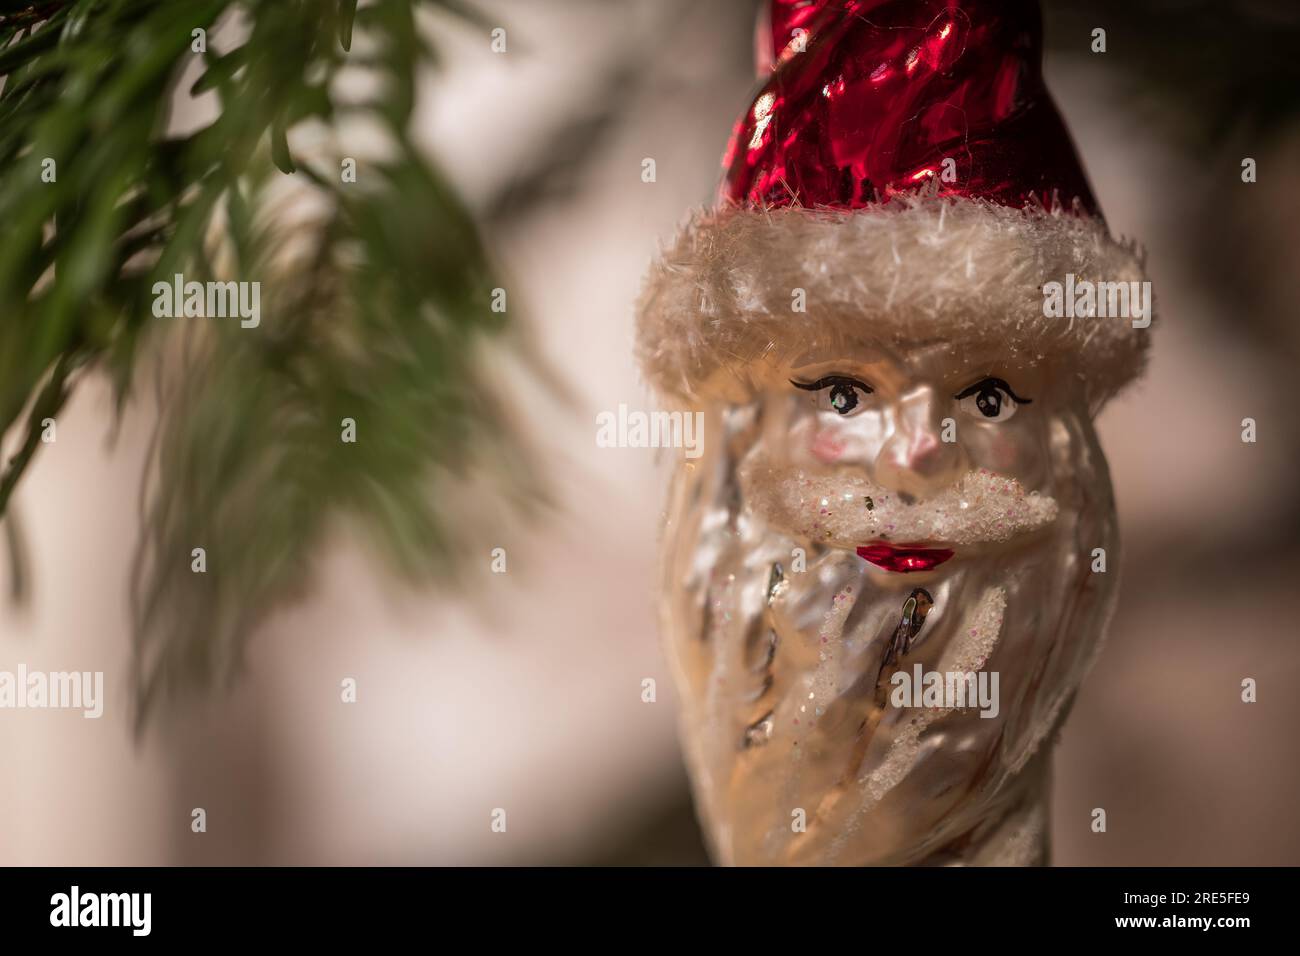 Weihnachtsschmuck - Weihnachtskugeln - Baumschmuck - Glaskugeln - Weihnachten Stock Photo